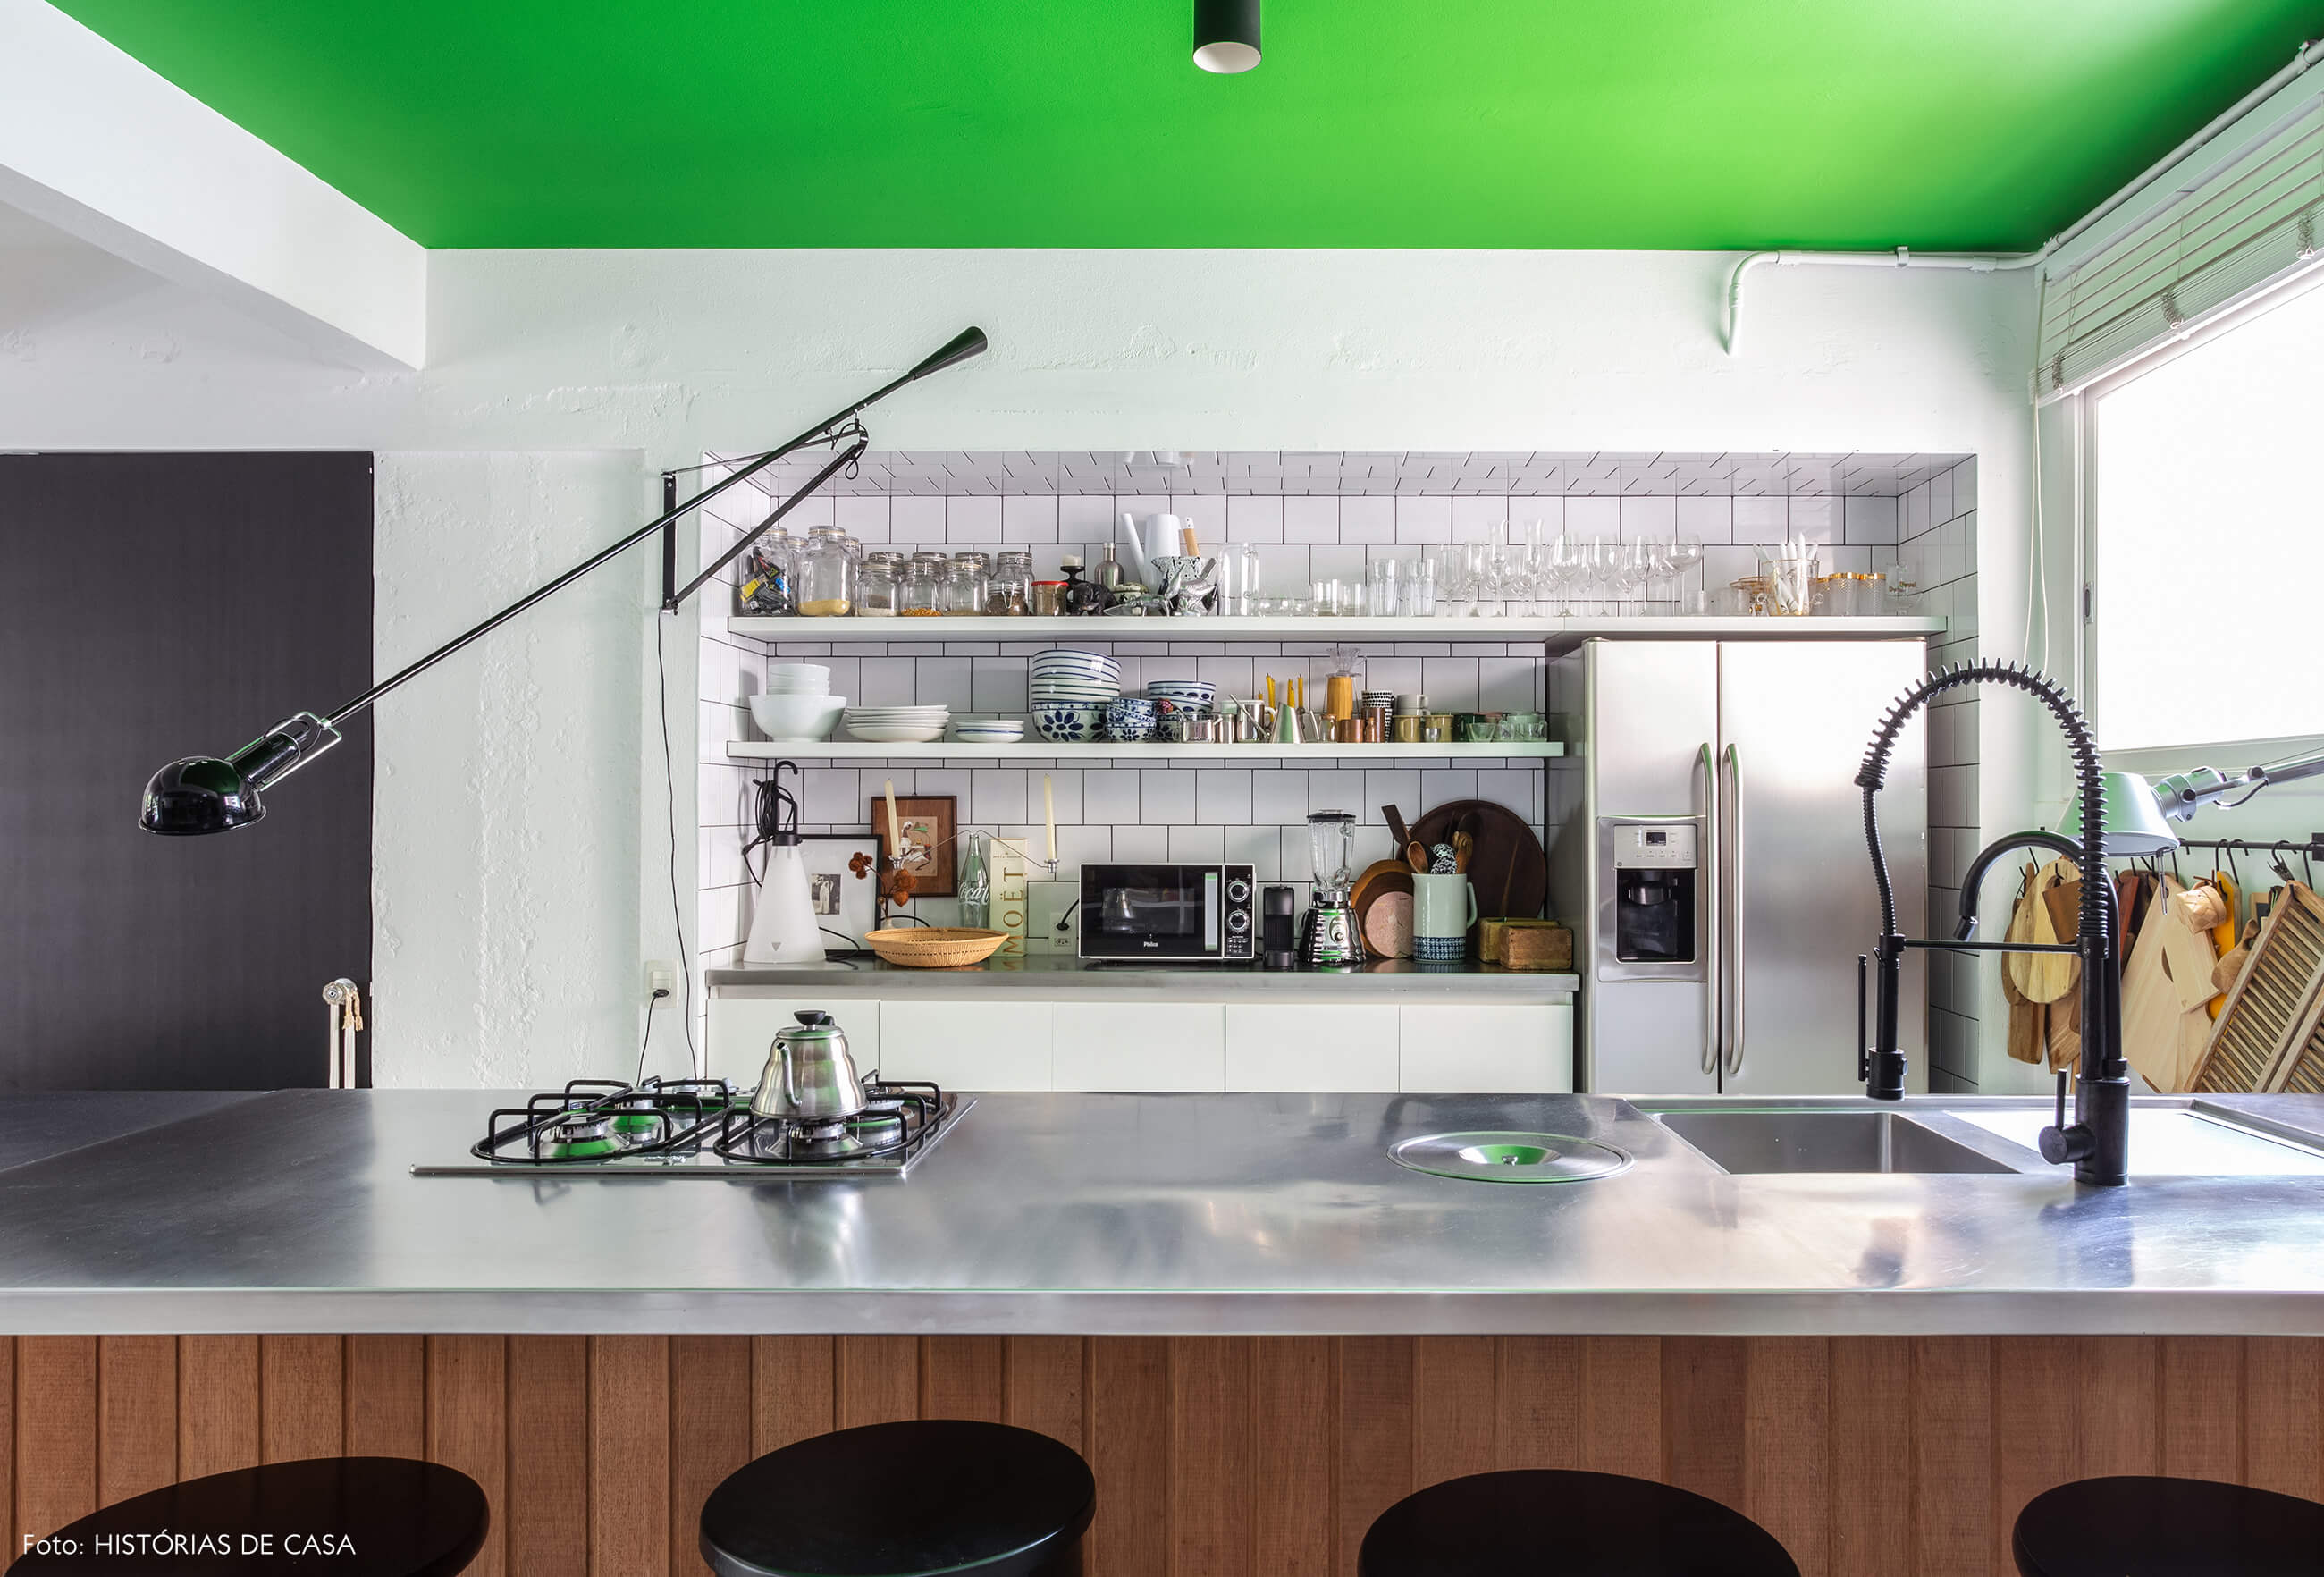 Apartamento do Maurício Arruda, cozinha com ilha de madeira e inox, e teto pintado de verde